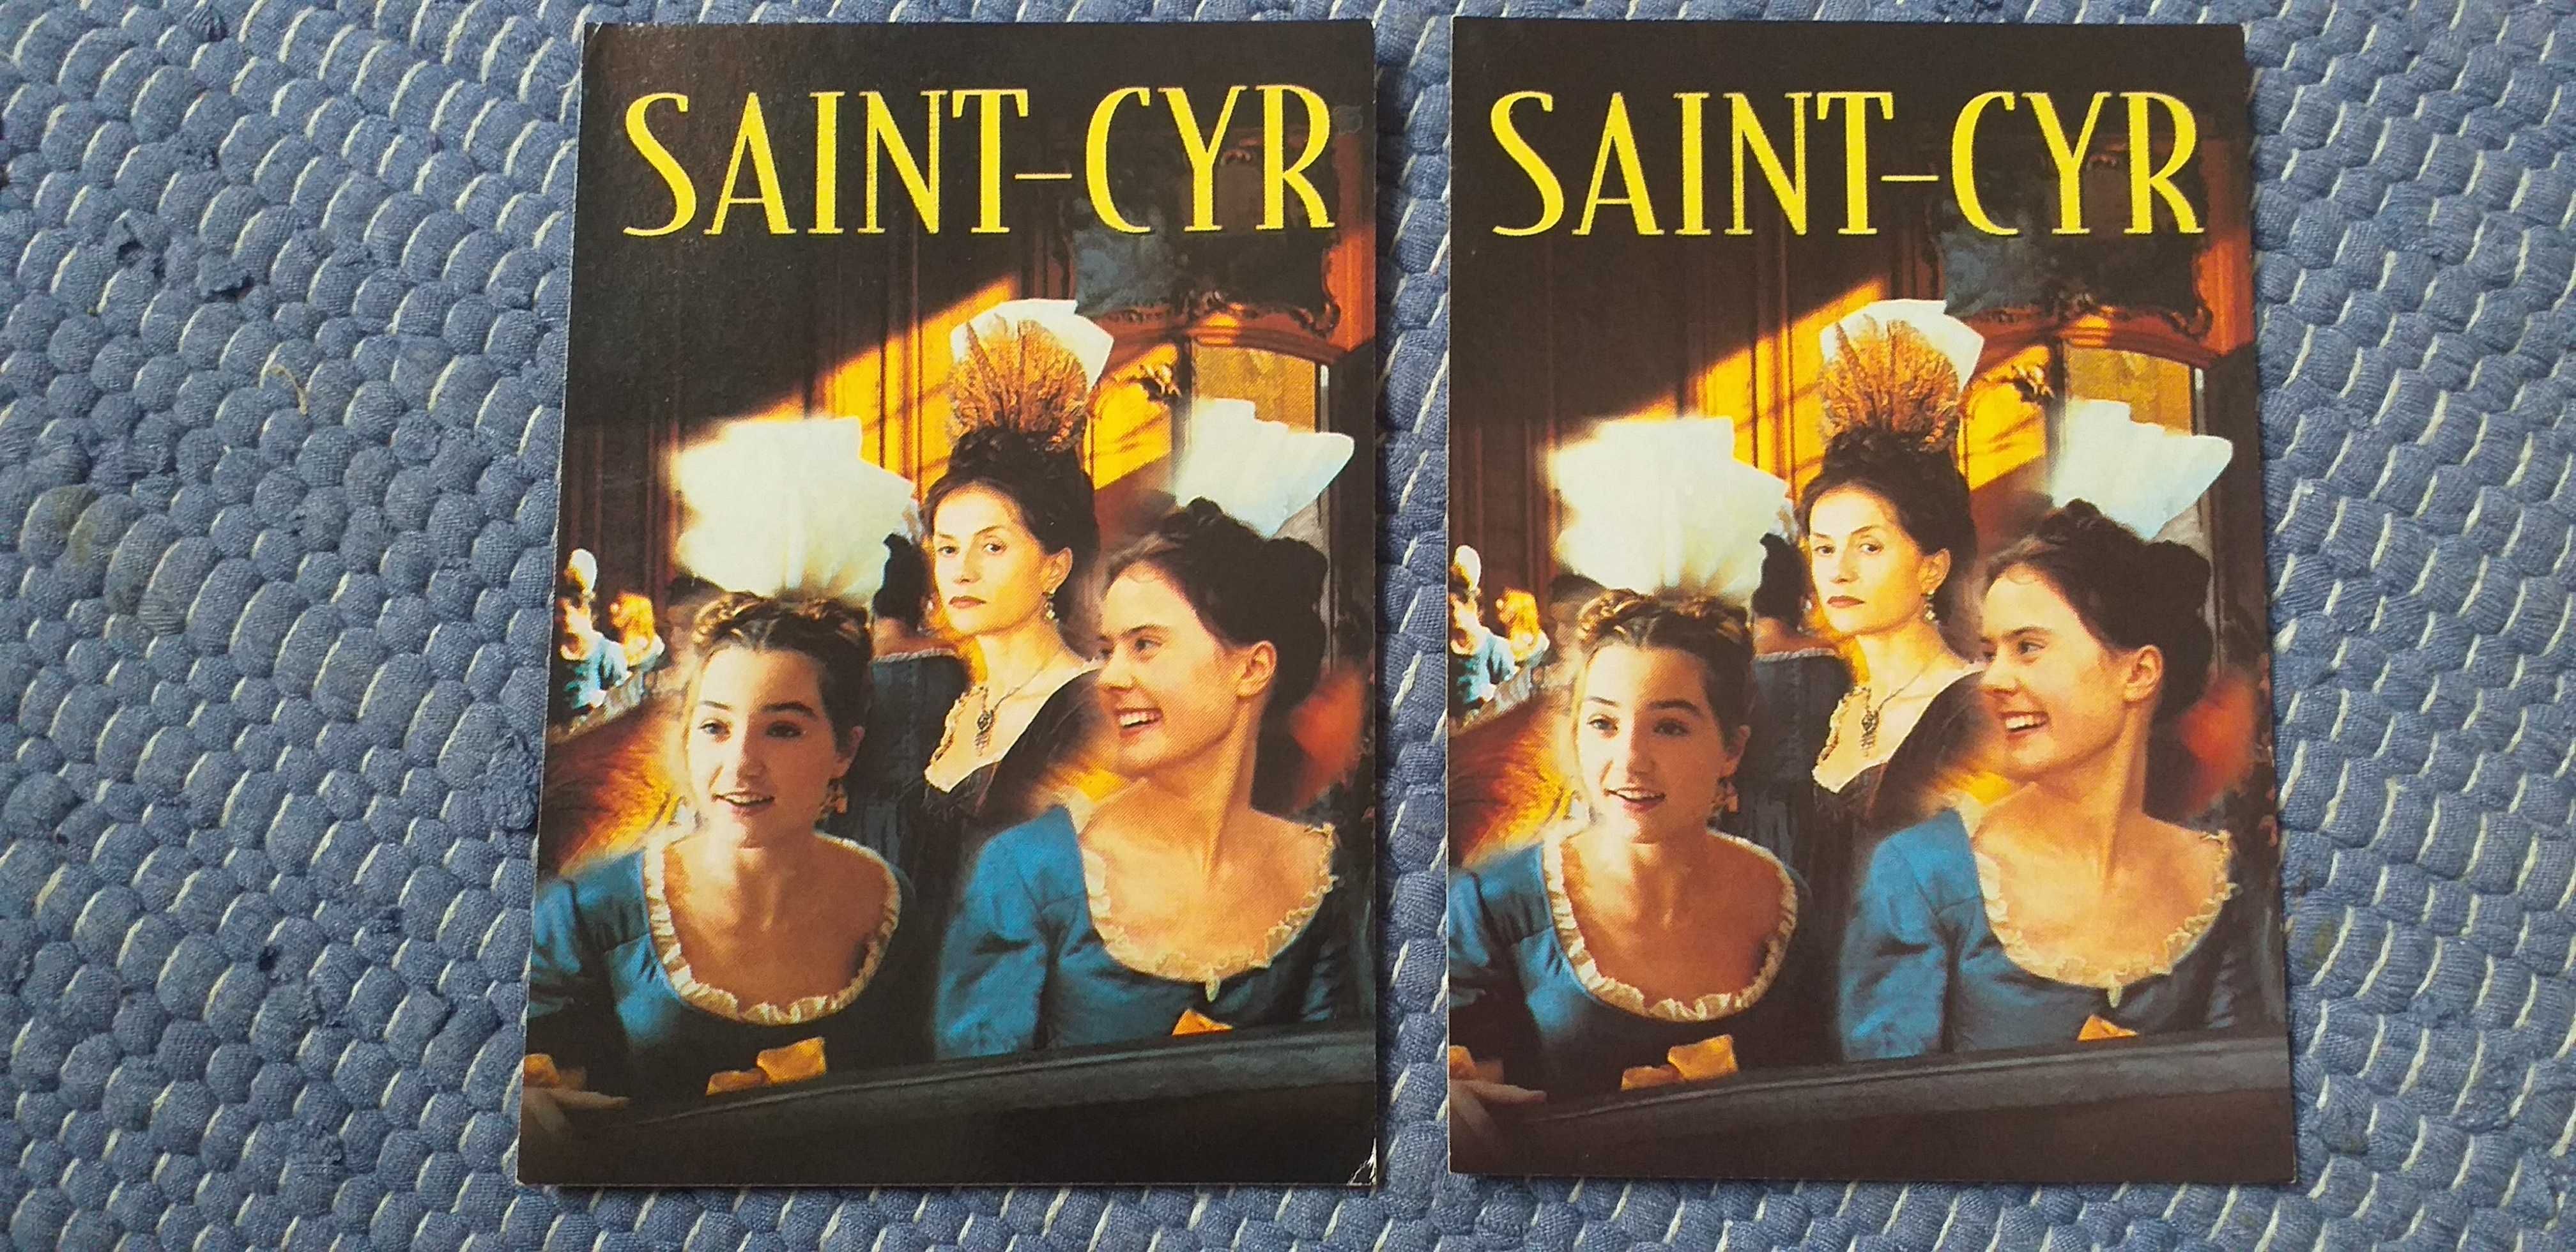 Postal do filme Saint-Cyr - portes incluidos.